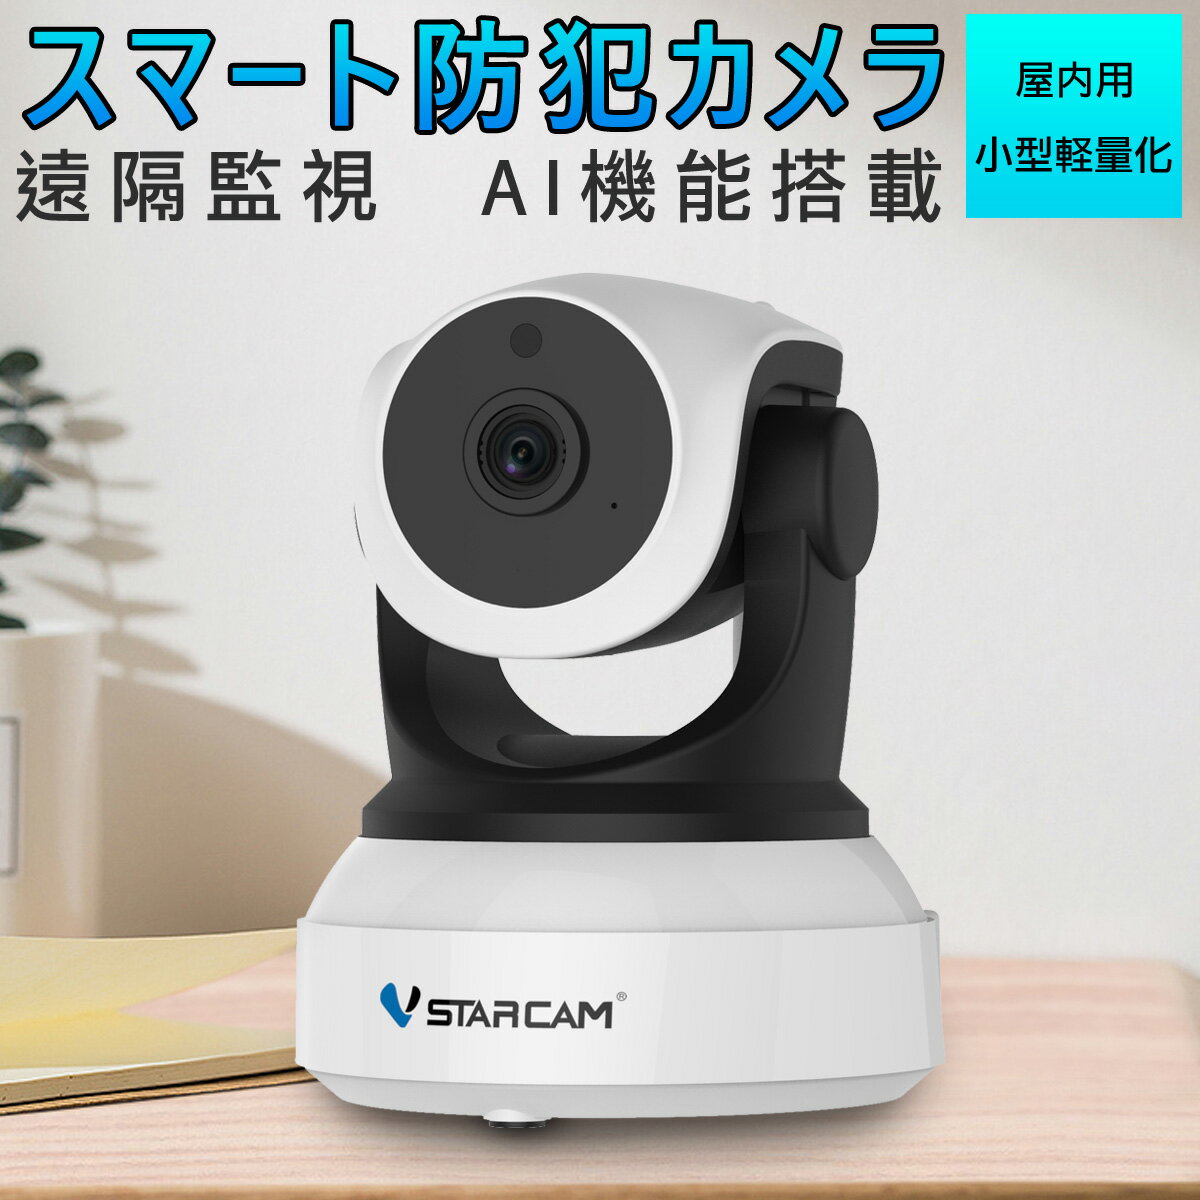 防犯カメラ ワイヤレス C24 VStarcam 100万画素 ONVIF対応 AI機能搭載 wifi 無線 人型フレーミング 人体追跡 人体検知 動体検知 MicroSDカード録画 録音 遠隔監視 赤ちゃん 子供 ペット 屋内用 IP カメラ PSE 技適 6ヶ月保証